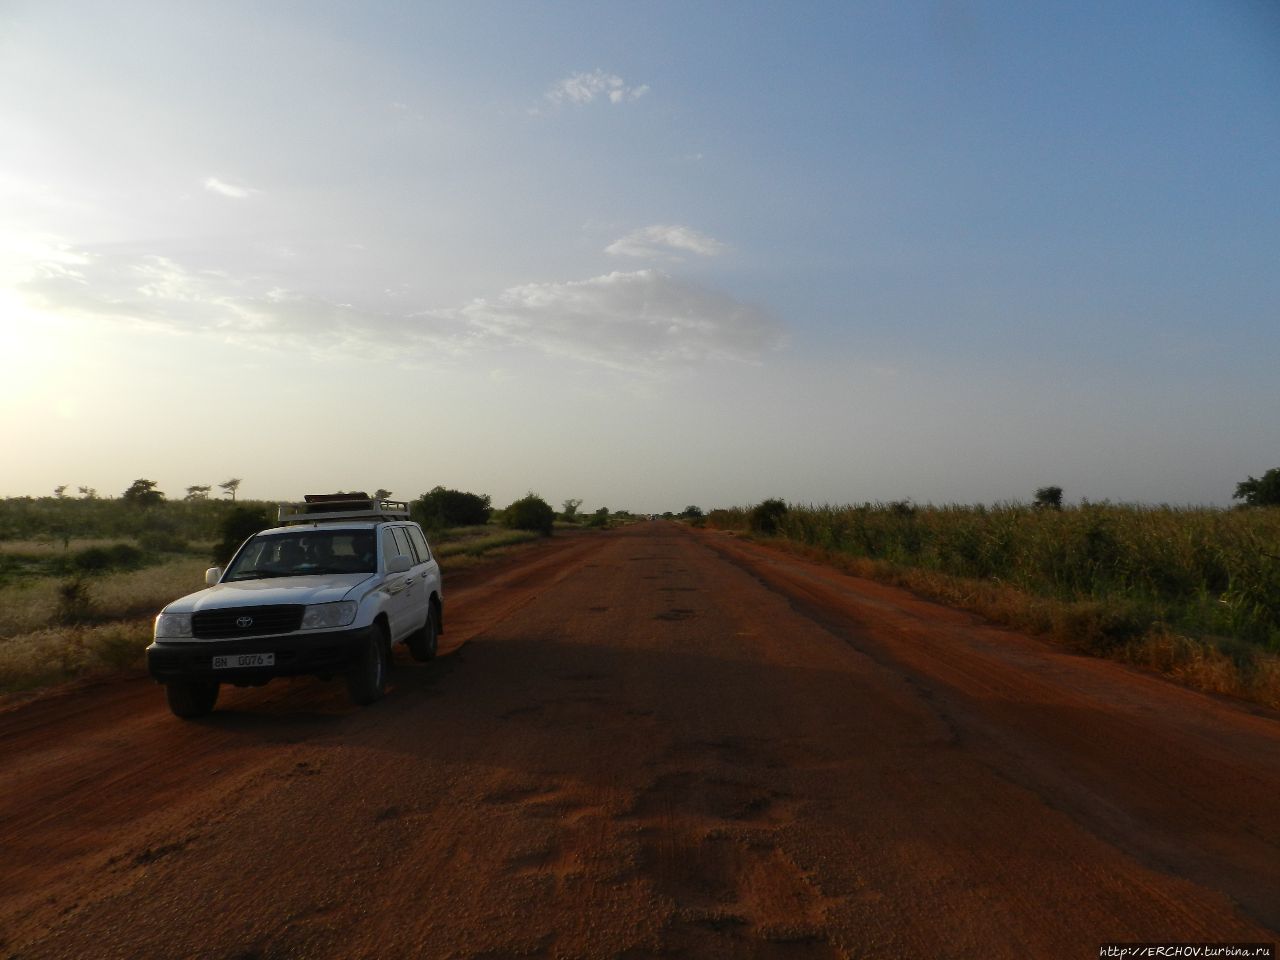 Нигер. Ч — 21. Долгая дорога из Агадеса в Зиндер Департамент Зиндер, Нигер